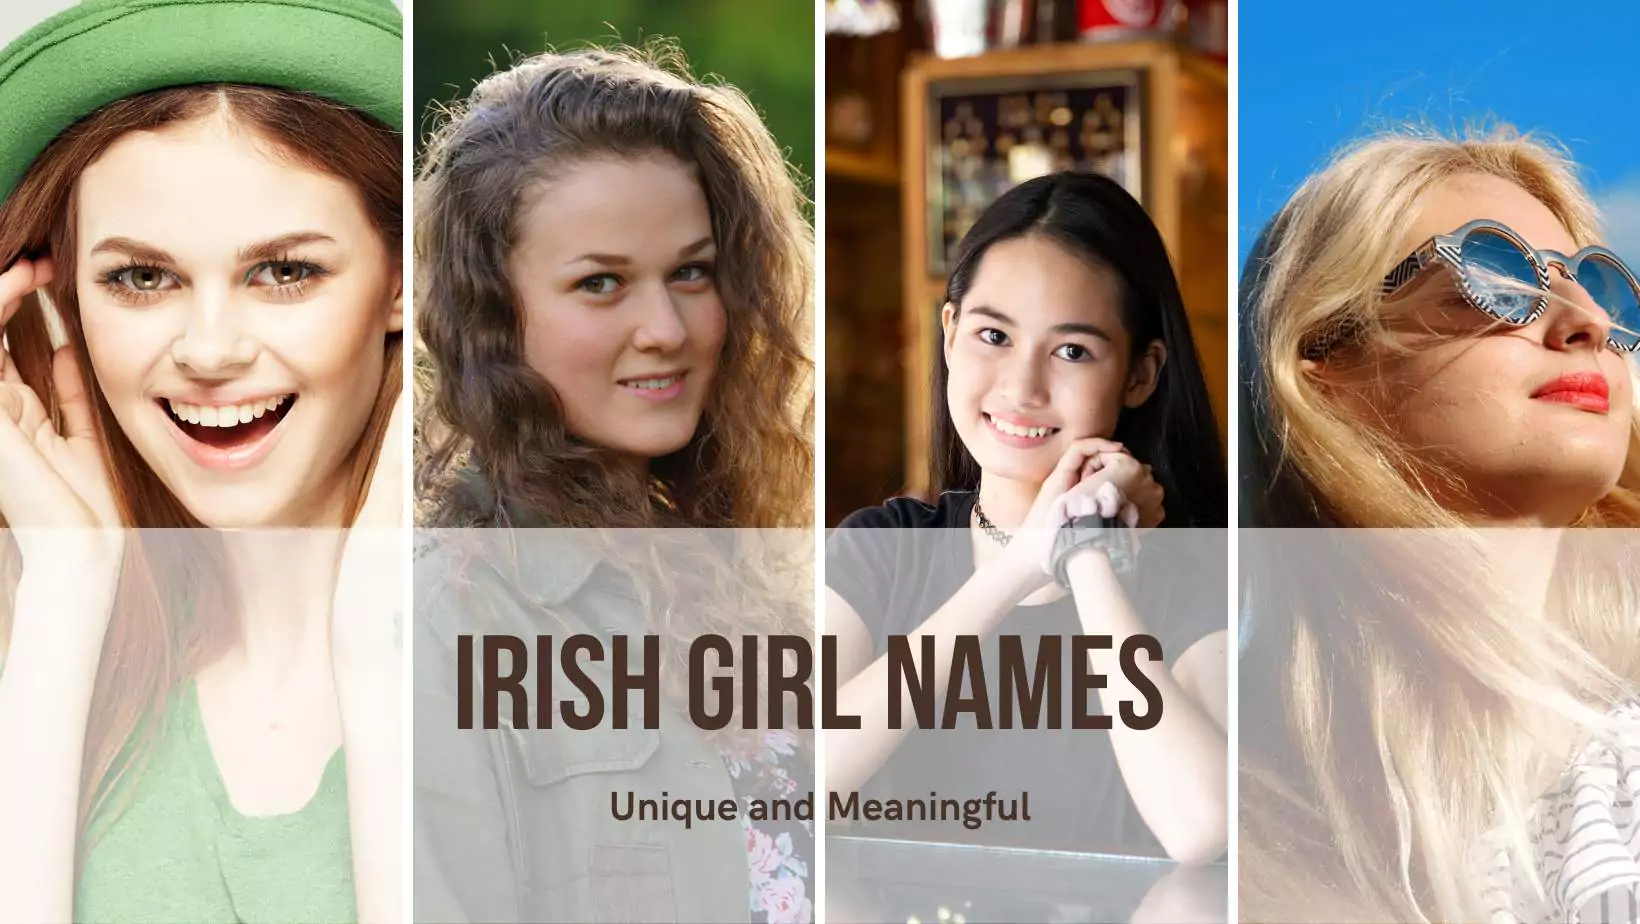 Irish girl names